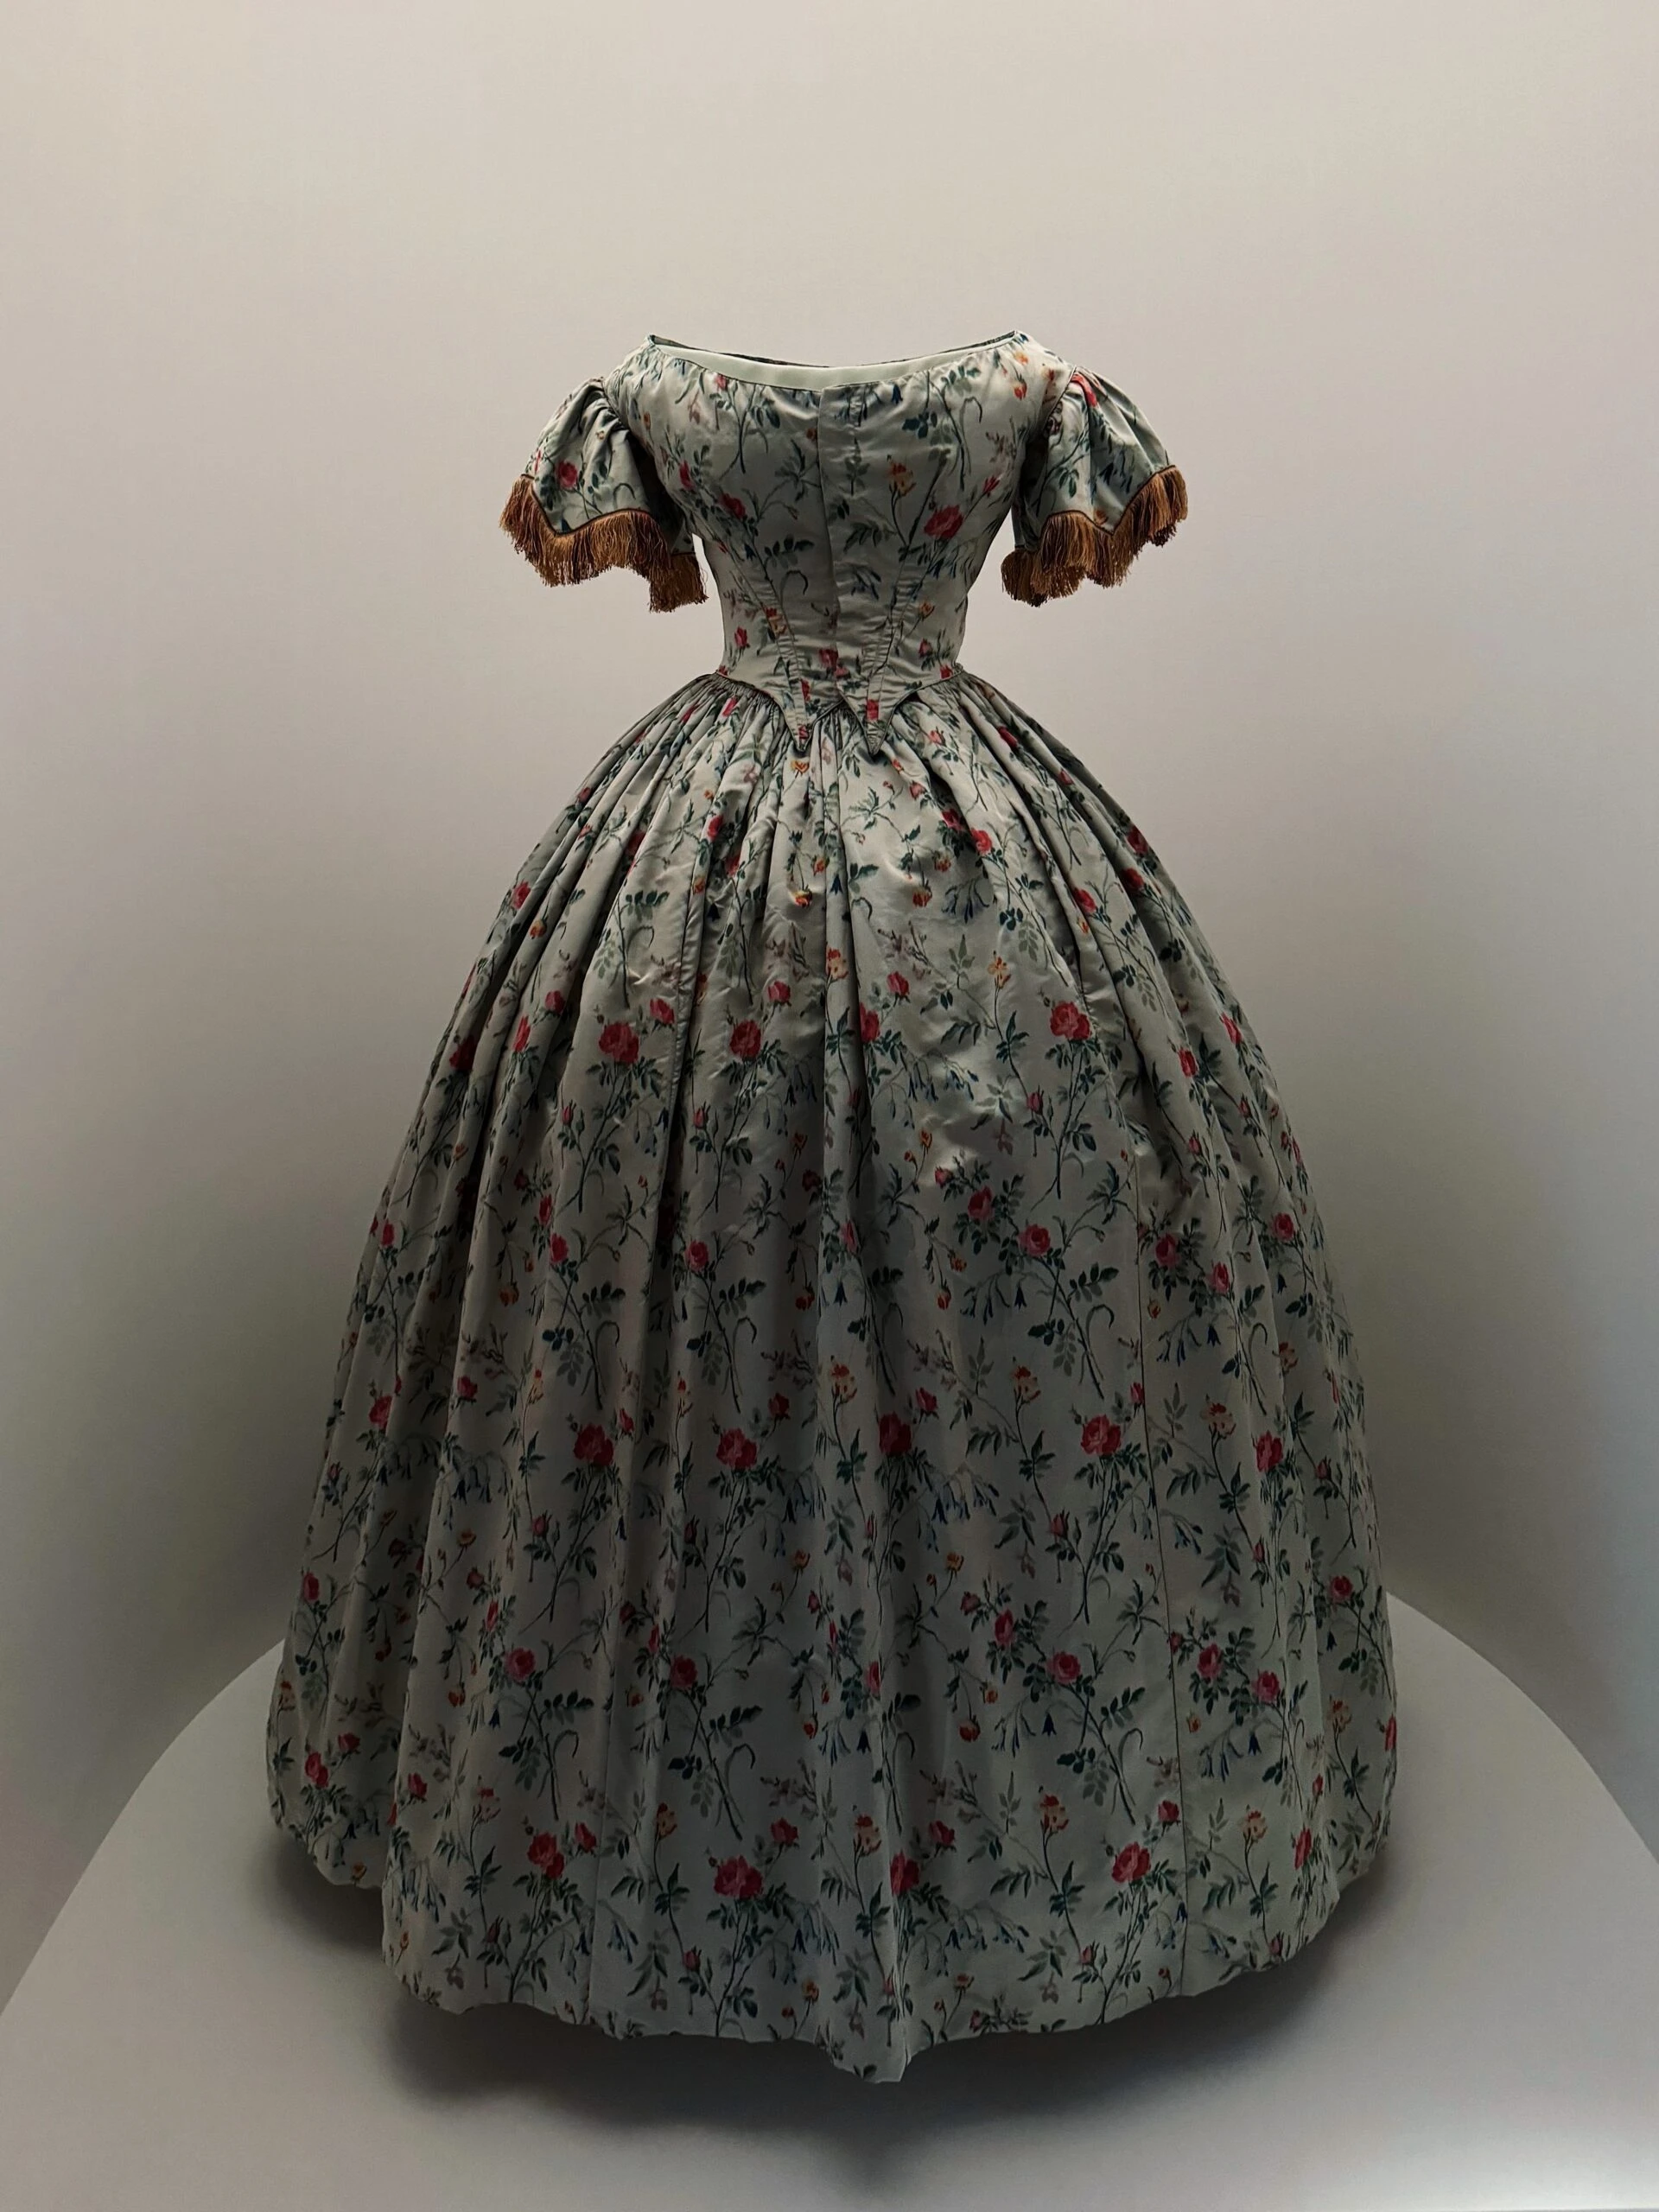 Vestido victoriano de 1837/77